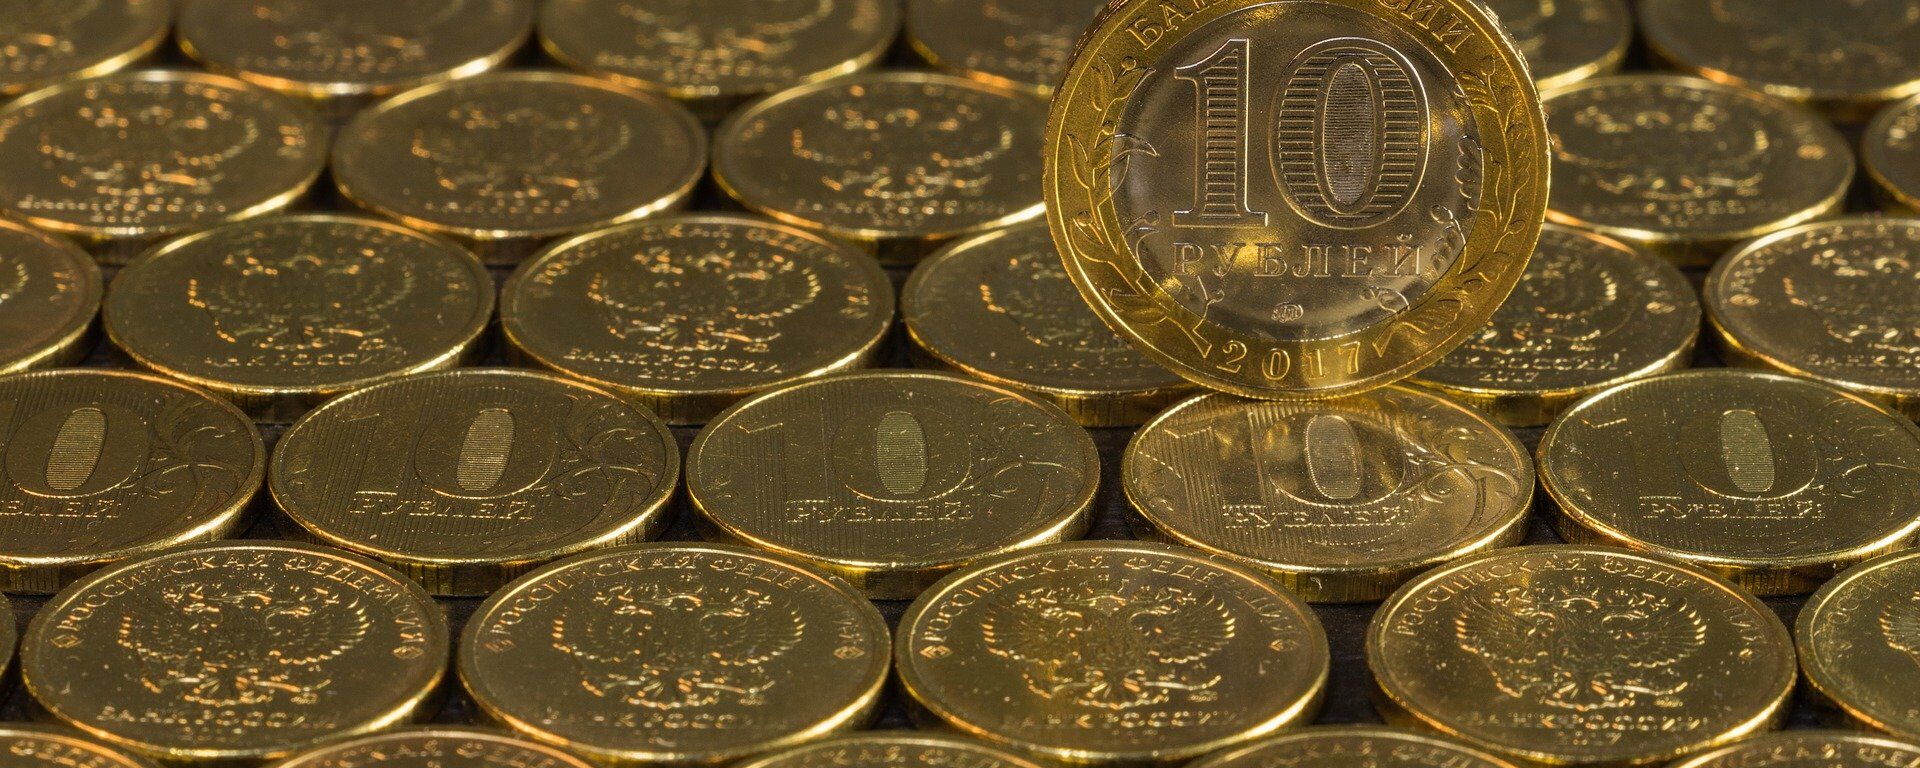 Монеты достоинством 10 рублей, архивное фото - Sputnik Таджикистан, 1920, 25.03.2021